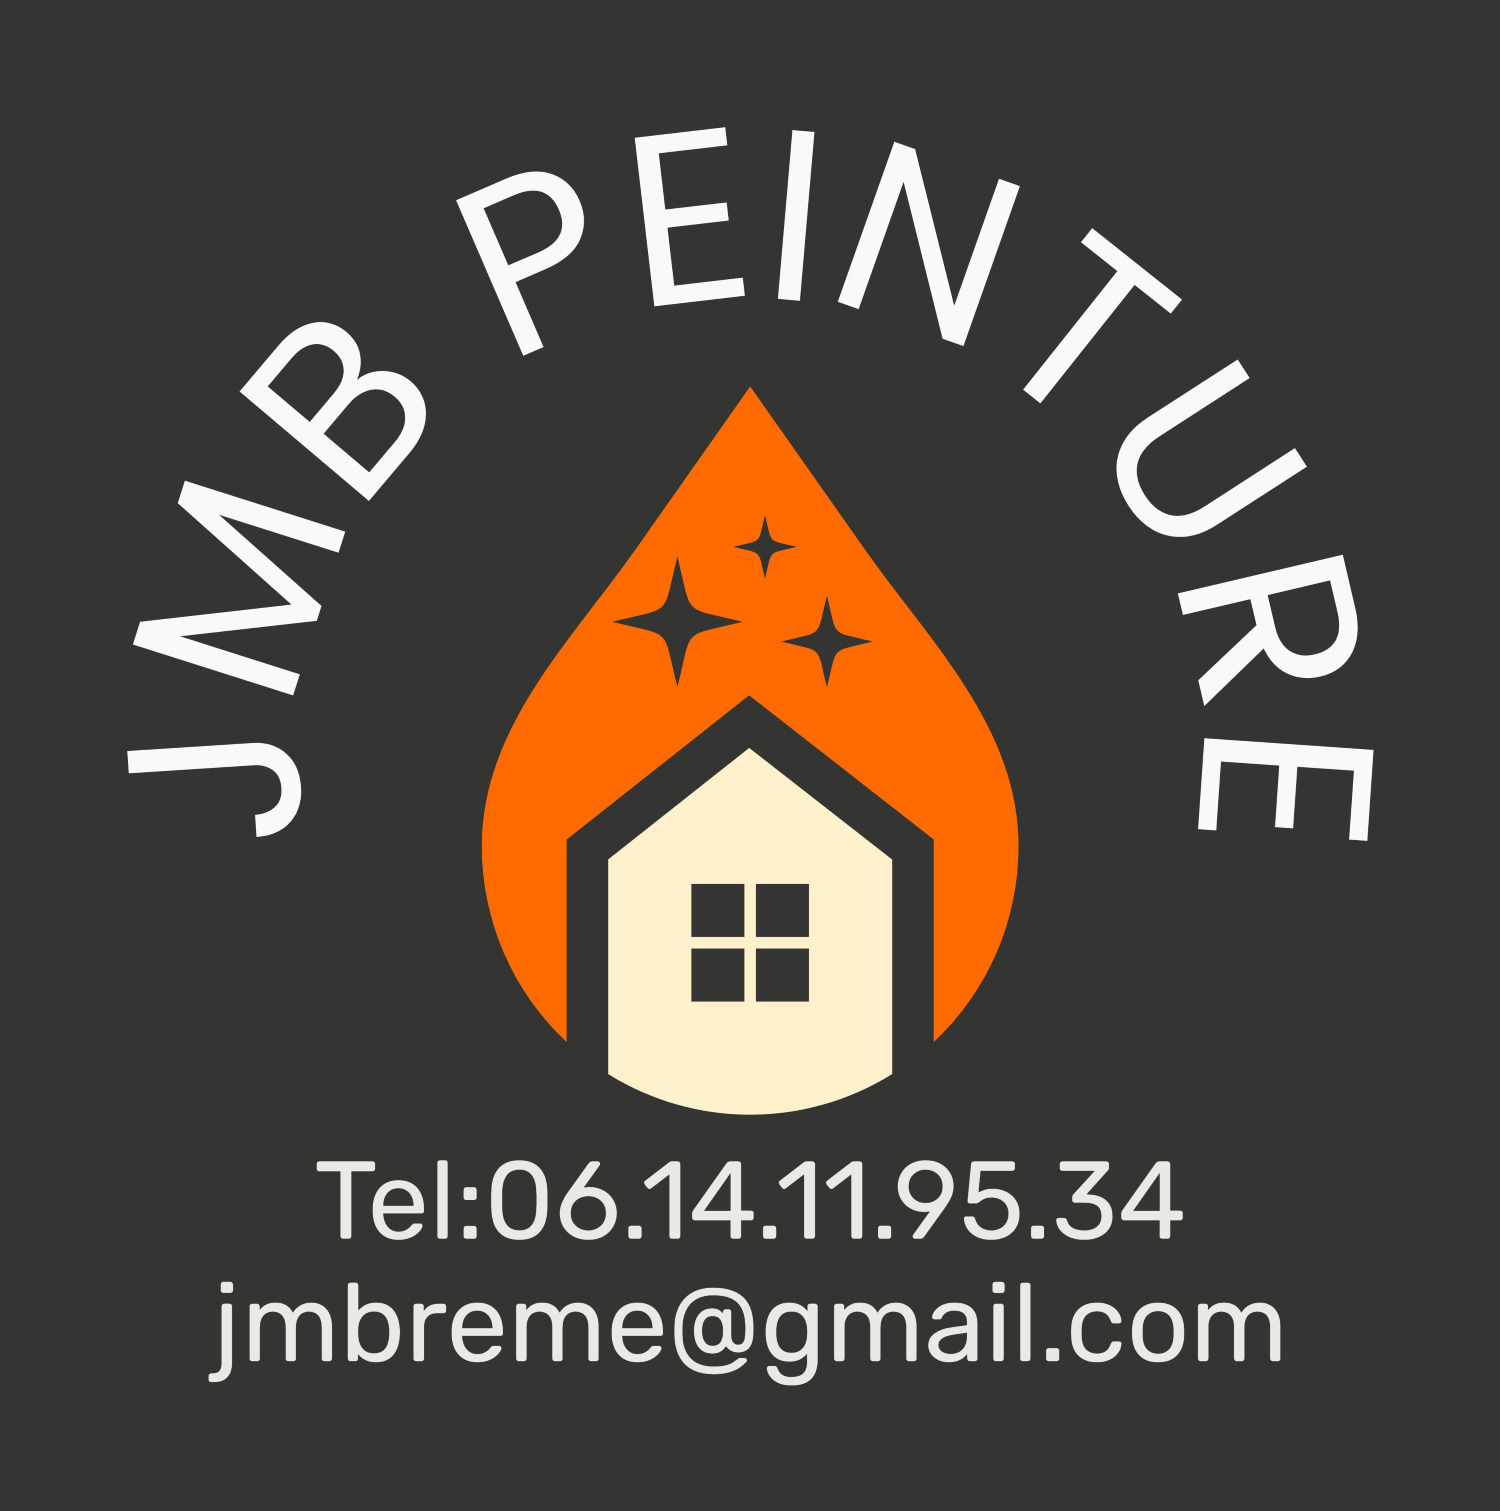 Logo de JMB PEINTURE, société de travaux en Fourniture et pose de parquets flottants